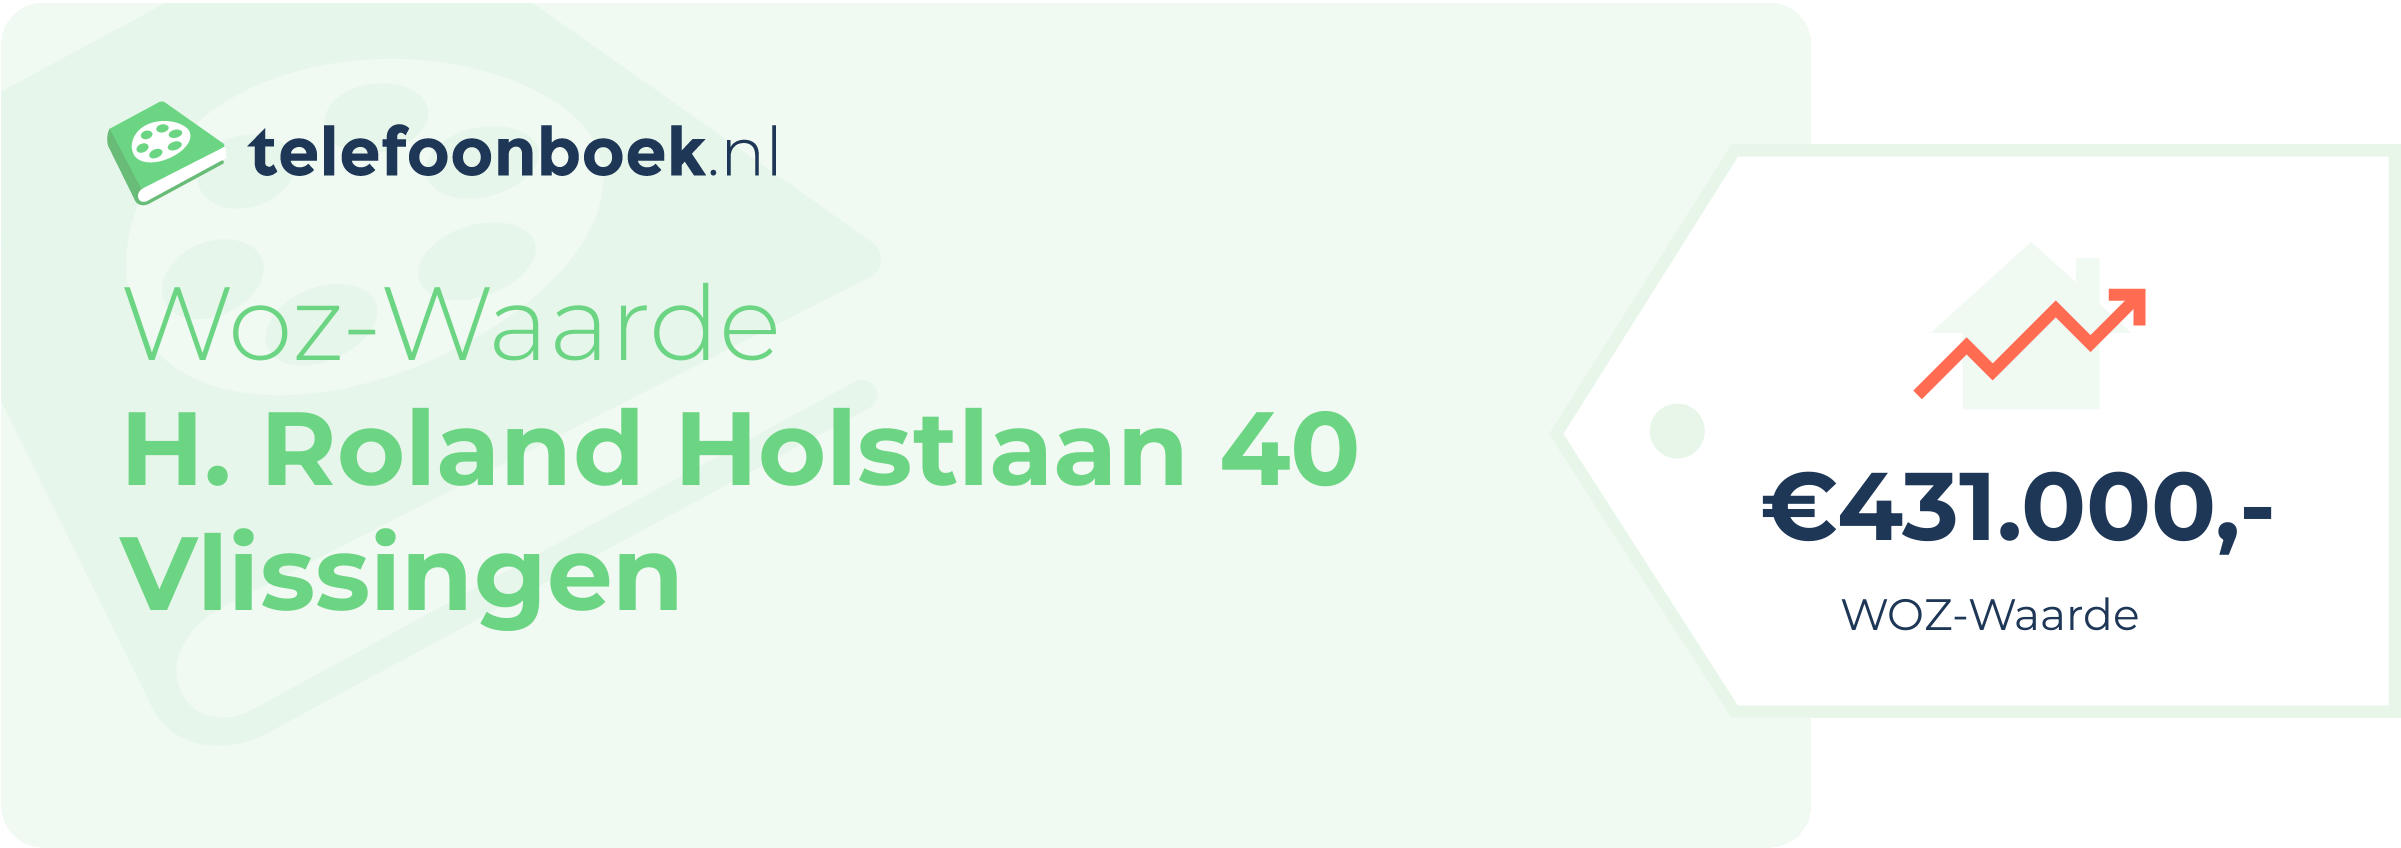 WOZ-waarde H. Roland Holstlaan 40 Vlissingen